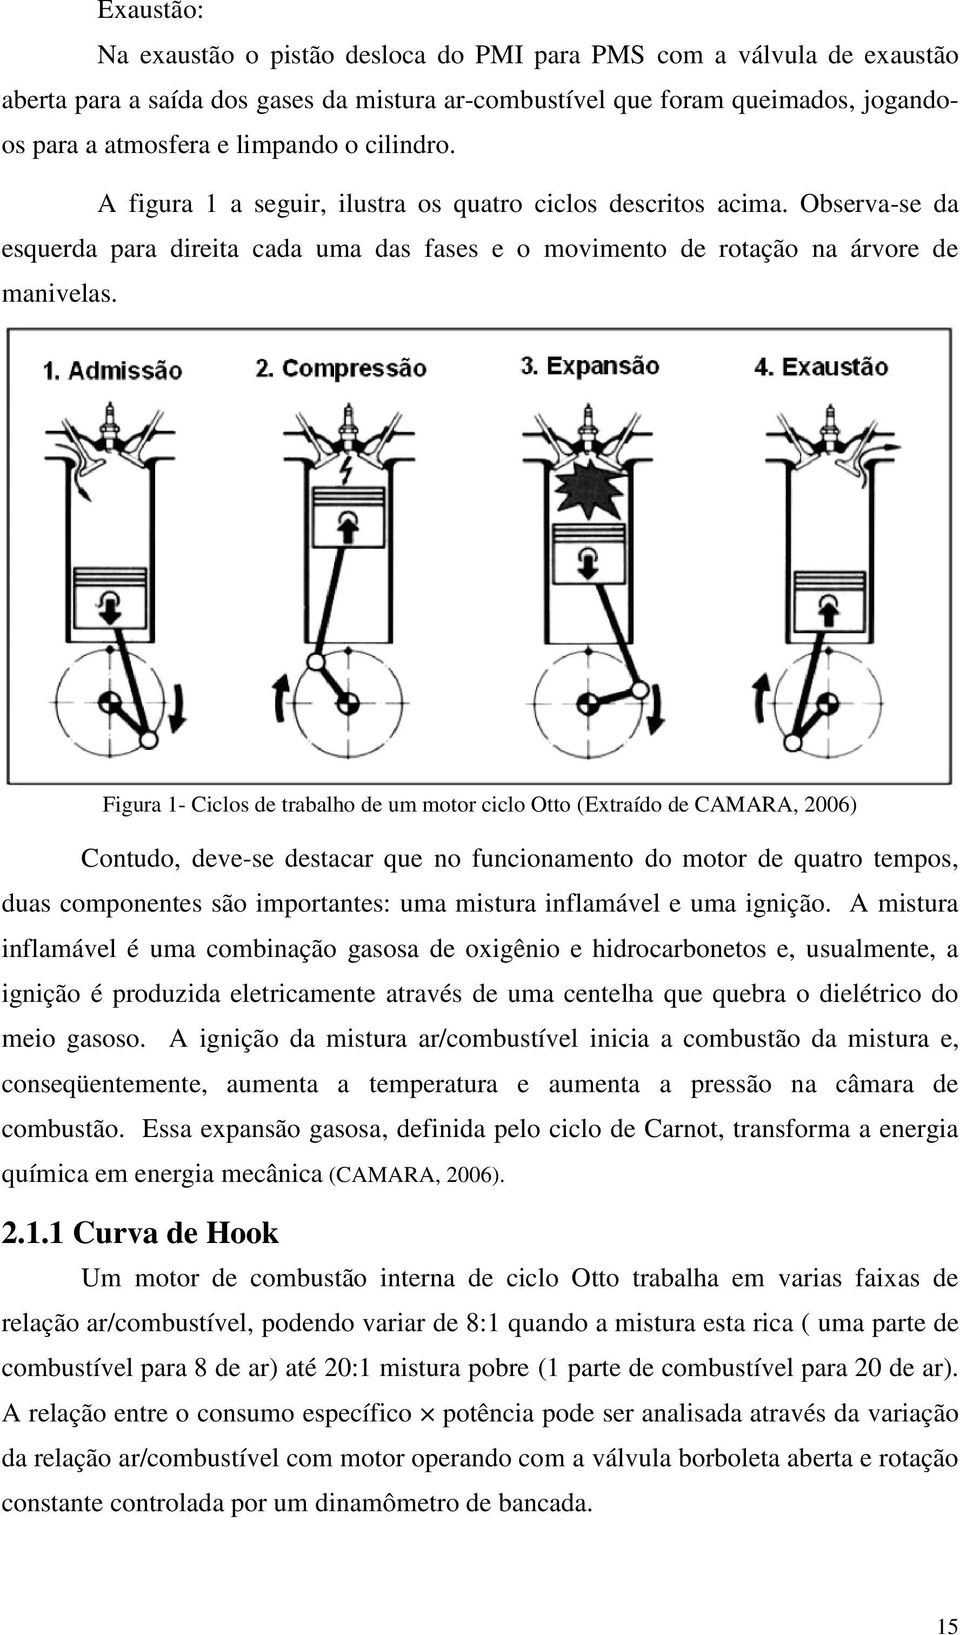 Figura 1- Ciclos de trabalho de um motor ciclo Otto (Extraído de CAMARA, 2006) Contudo, deve-se destacar que no funcionamento do motor de quatro tempos, duas componentes são importantes: uma mistura